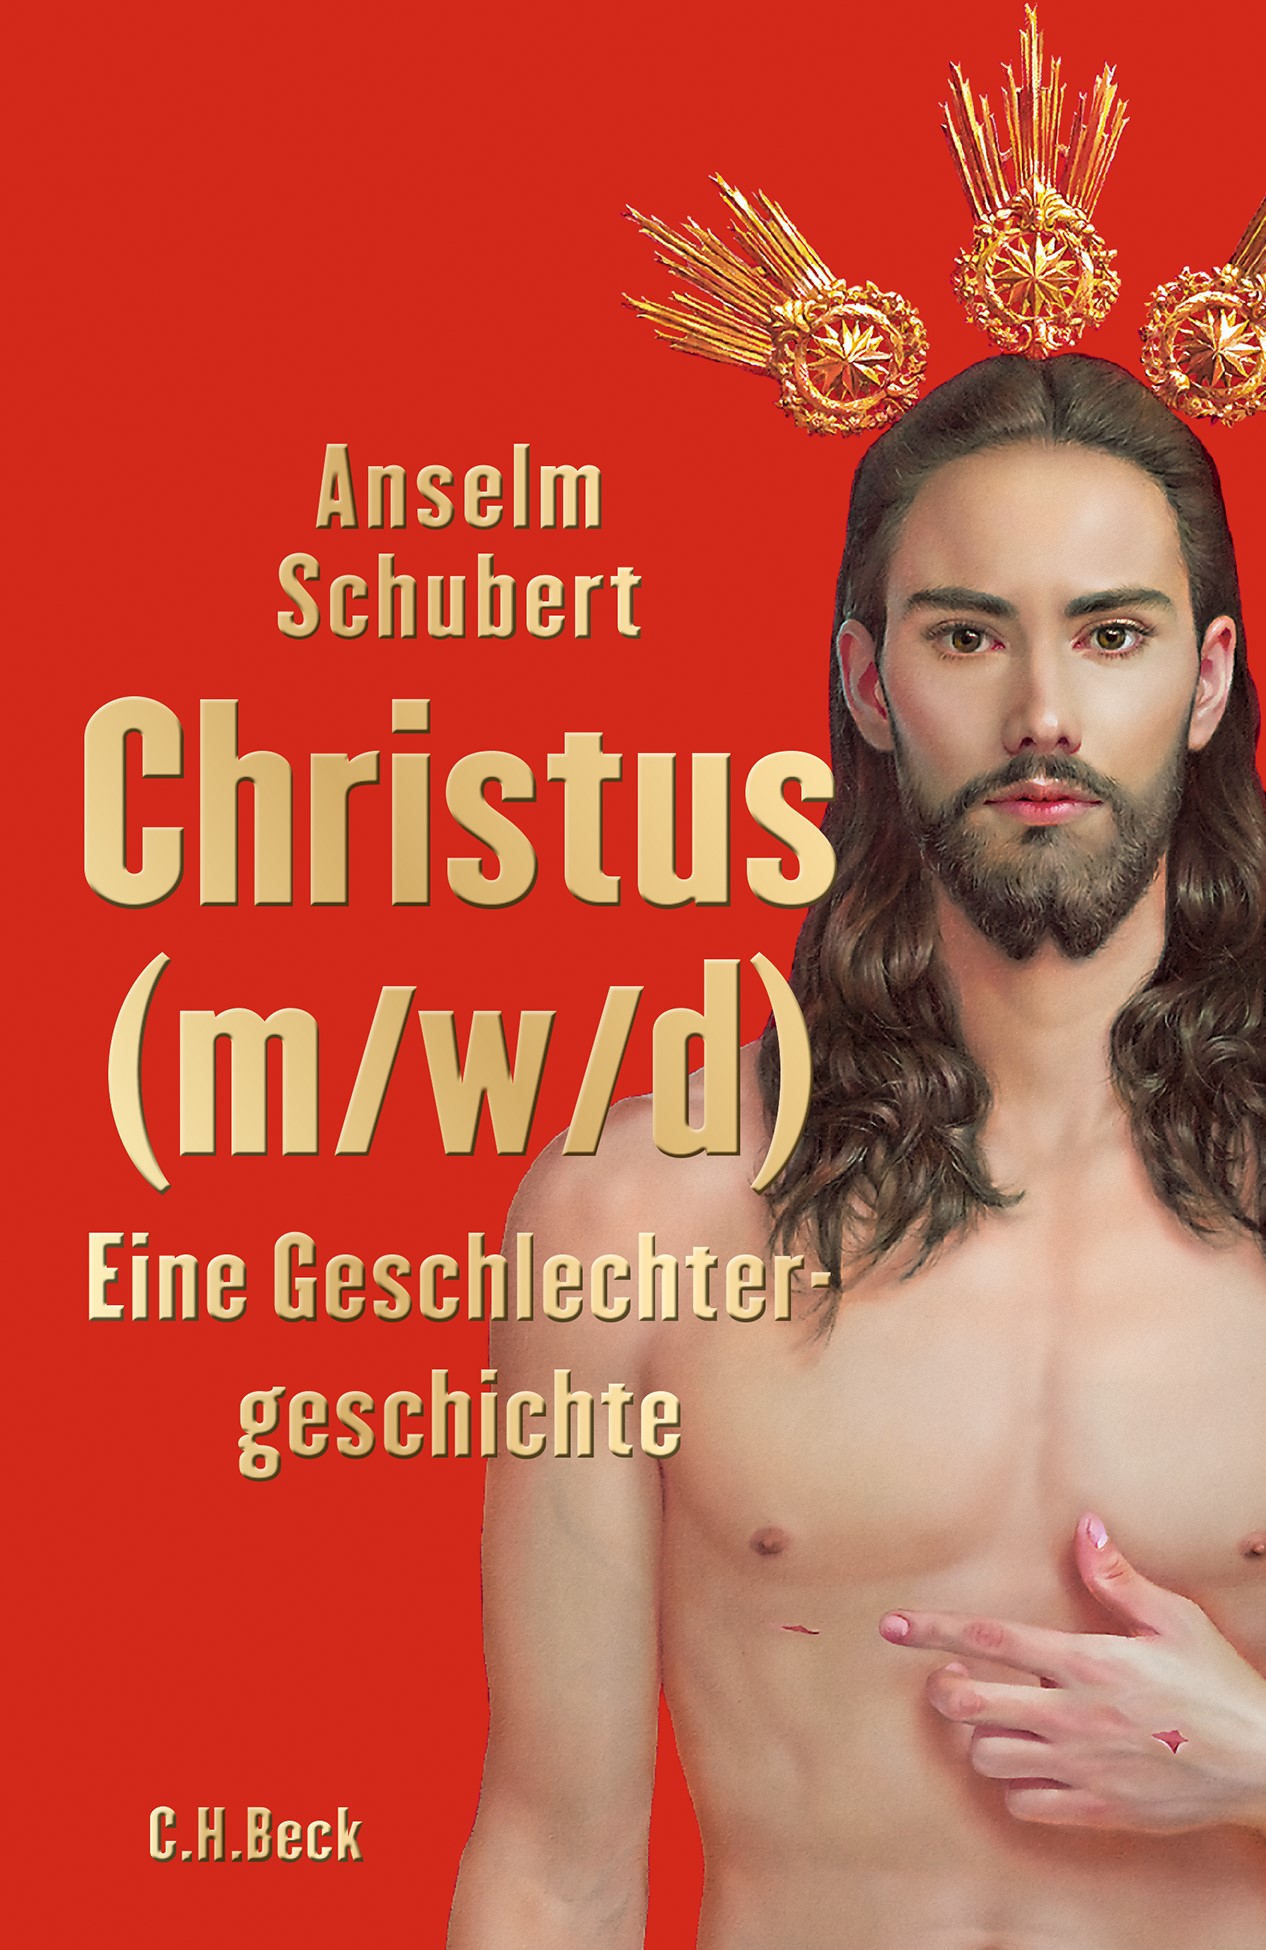 Cover: Schubert, Anselm, Christus (m/w/d)